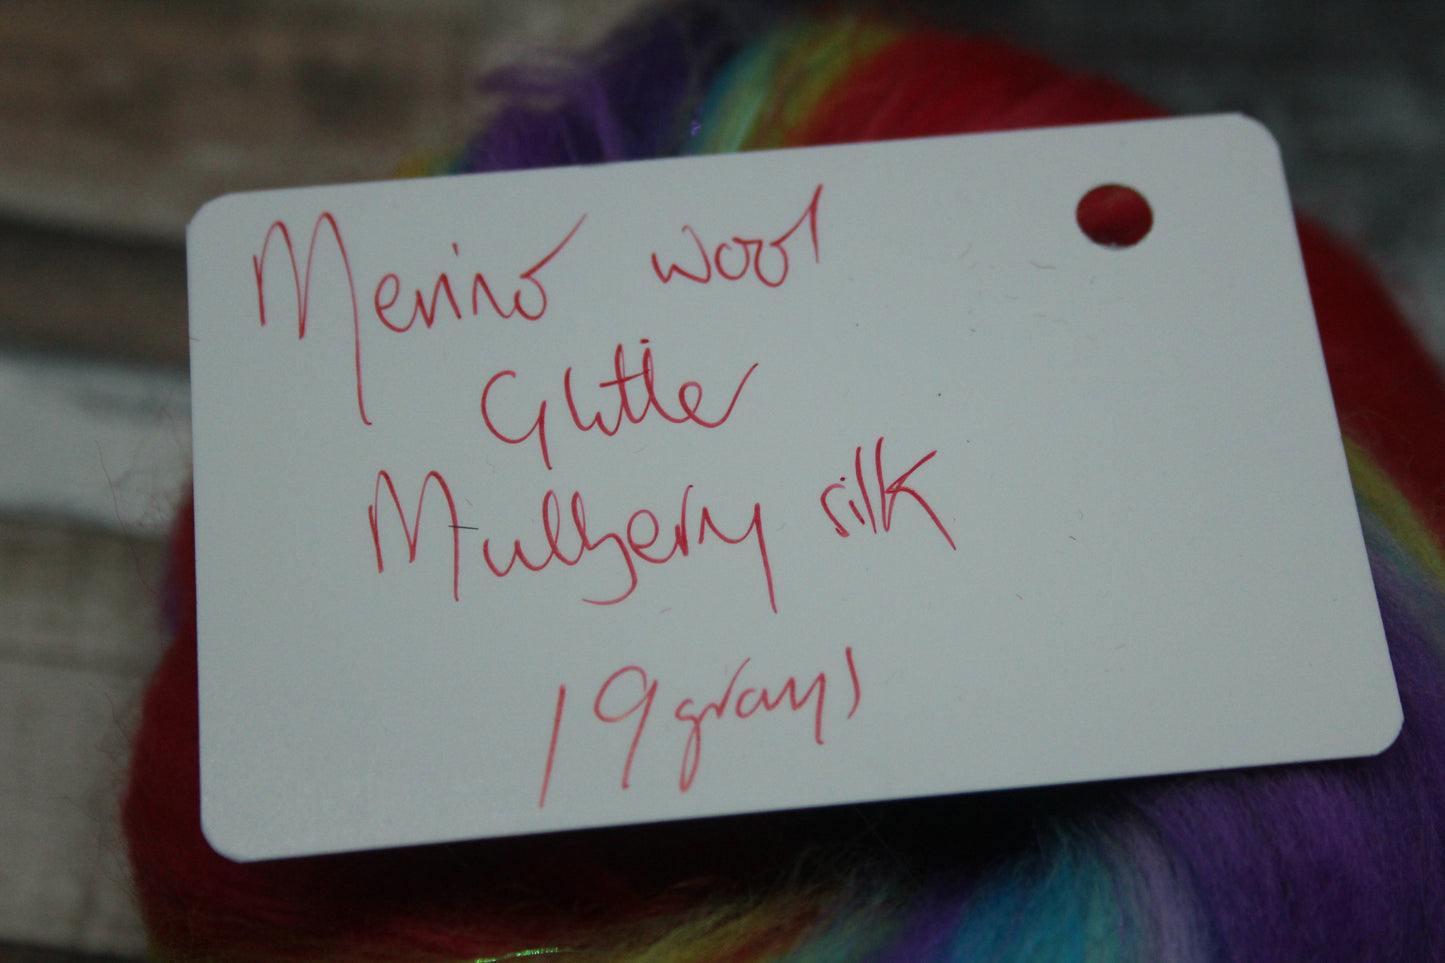 Merino Wool Blend - Rainbow - 19 grams / 0.6 oz  - Fibre for felting, weaving or spinning